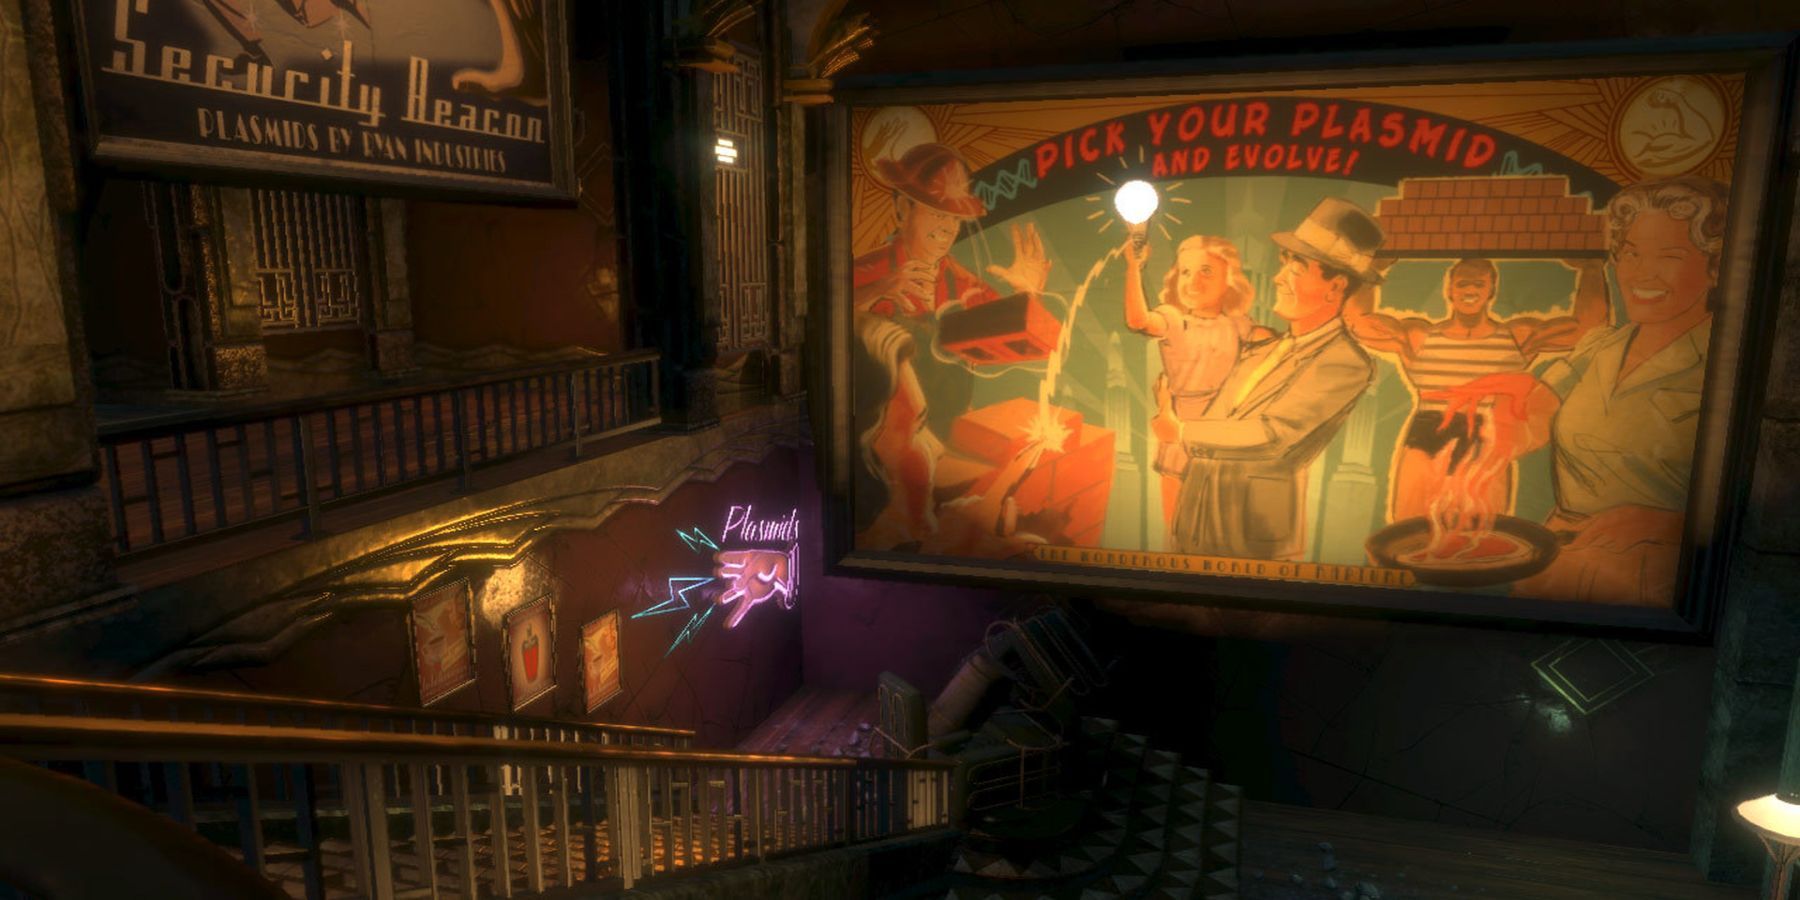 BioShock Steam art plasmid poster